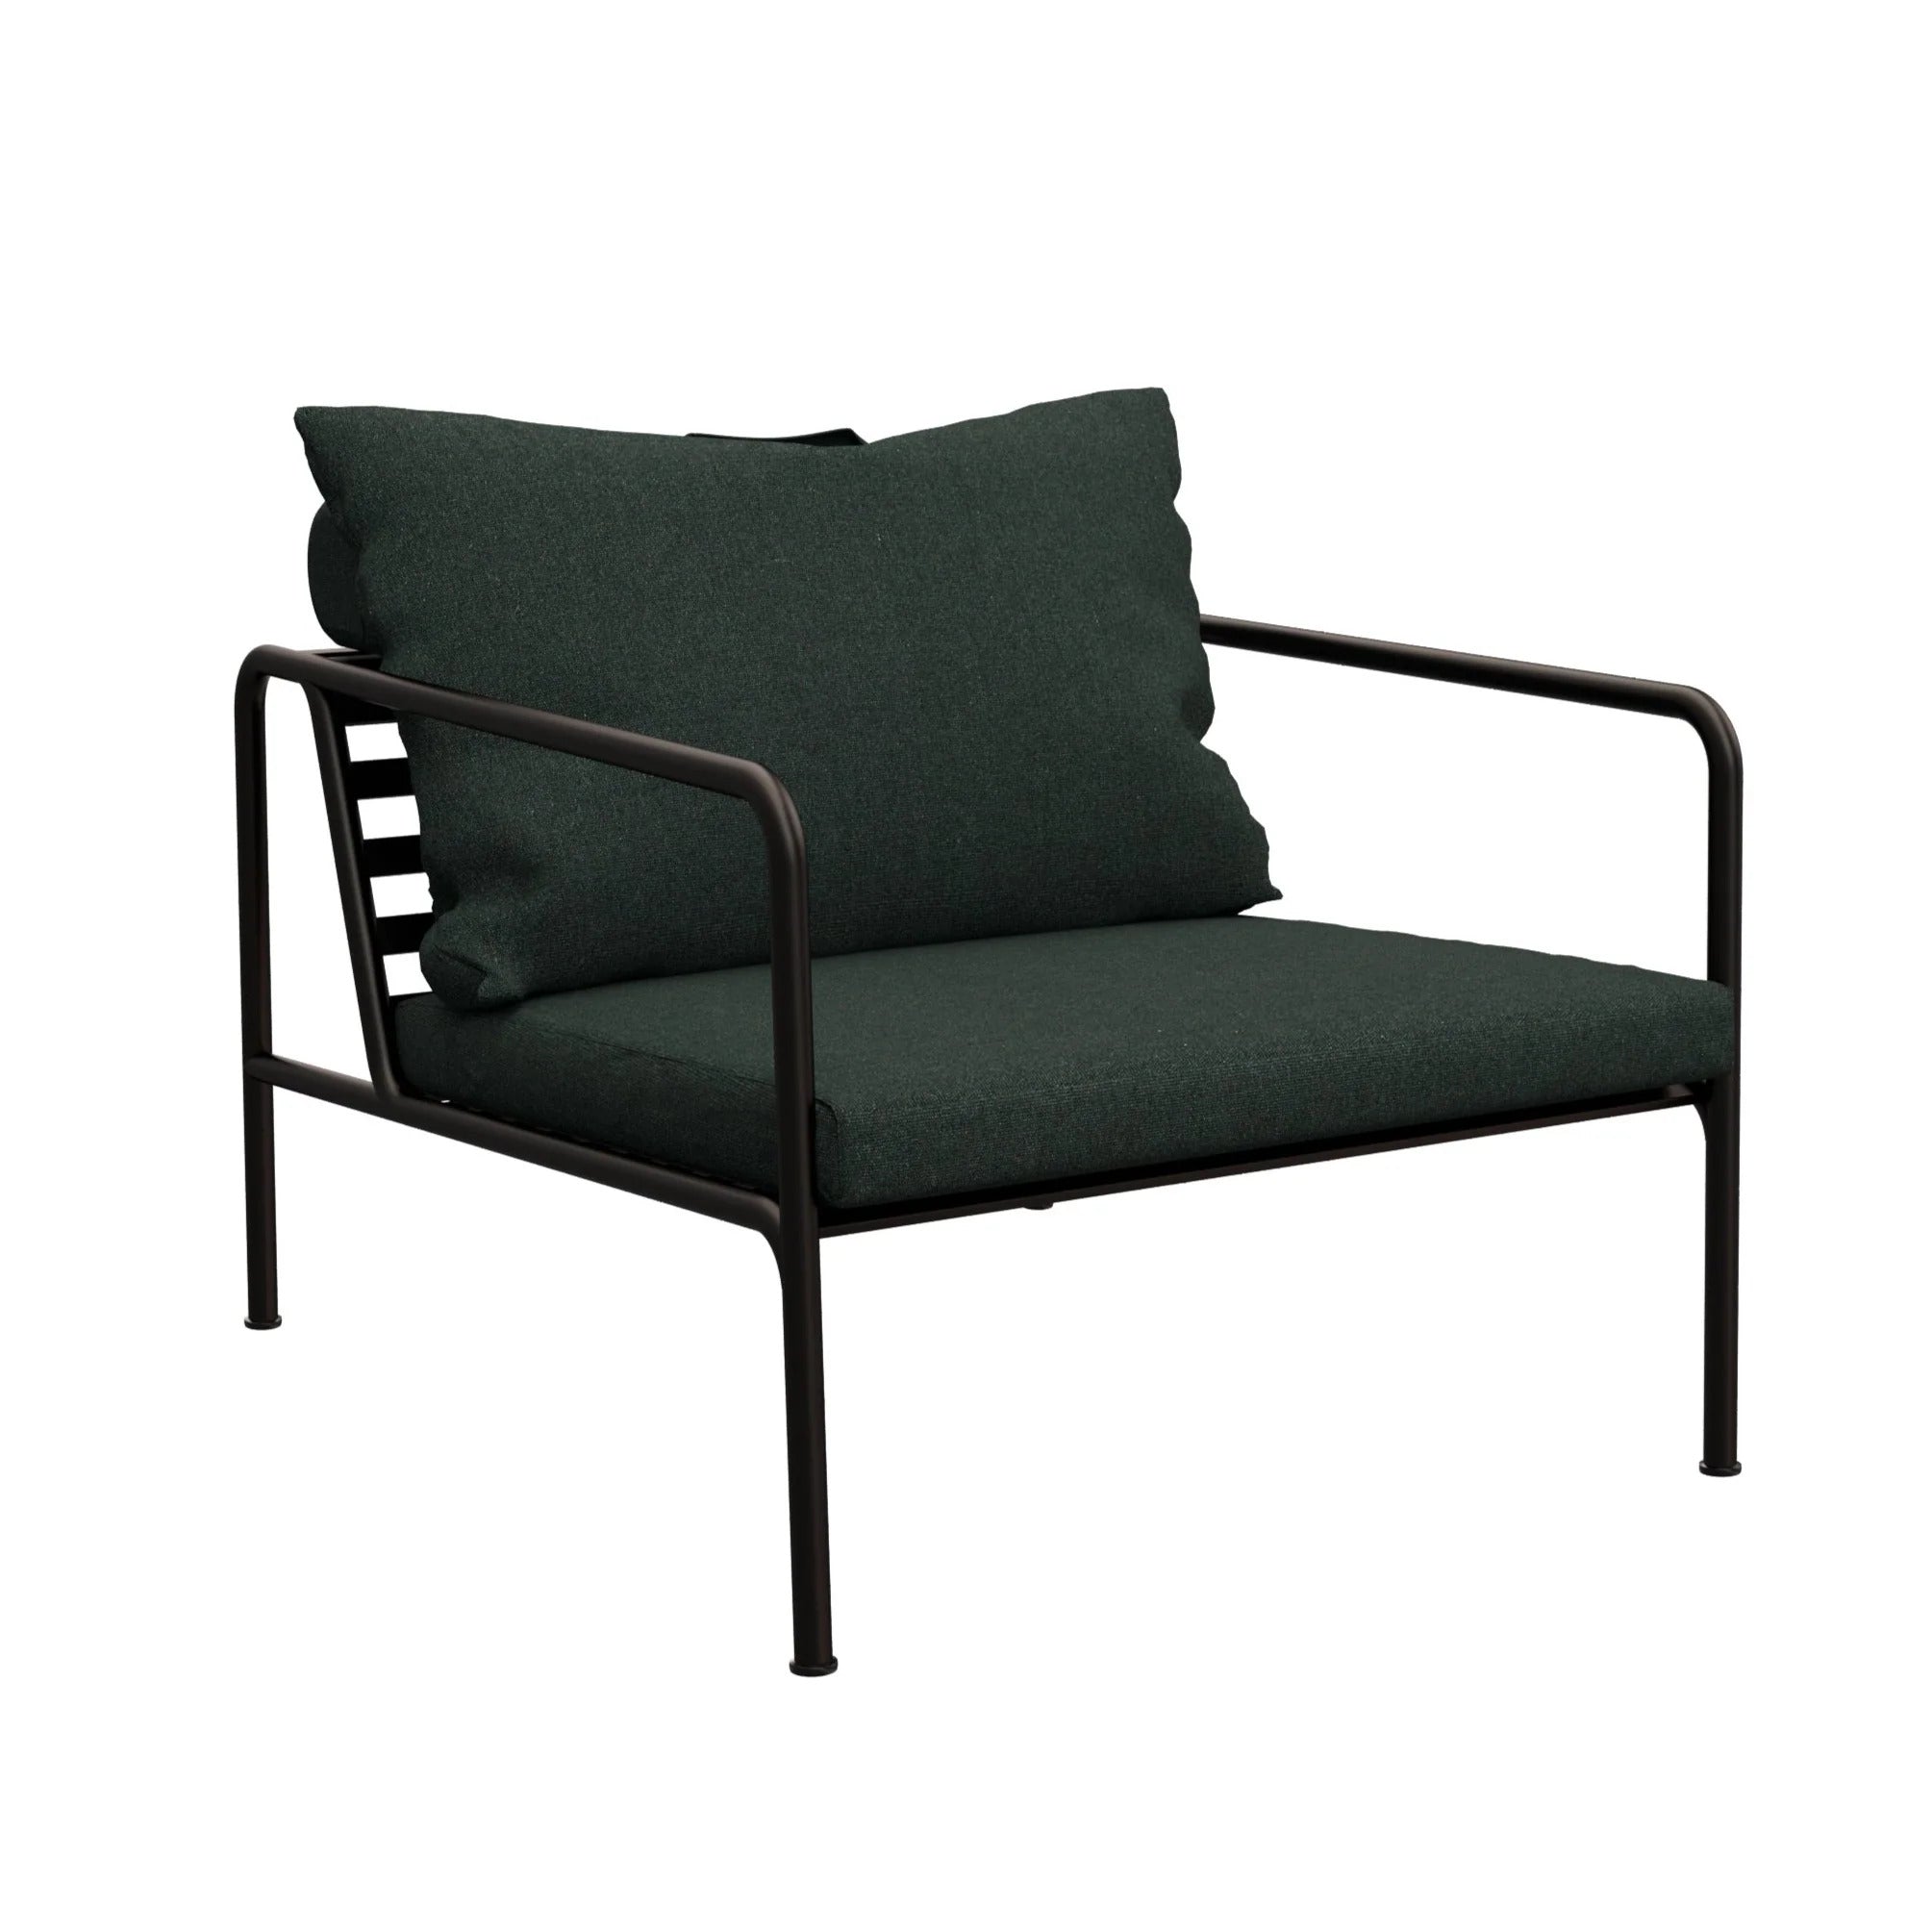 Avon Outdoor Lounge Chair (Alpine Green).